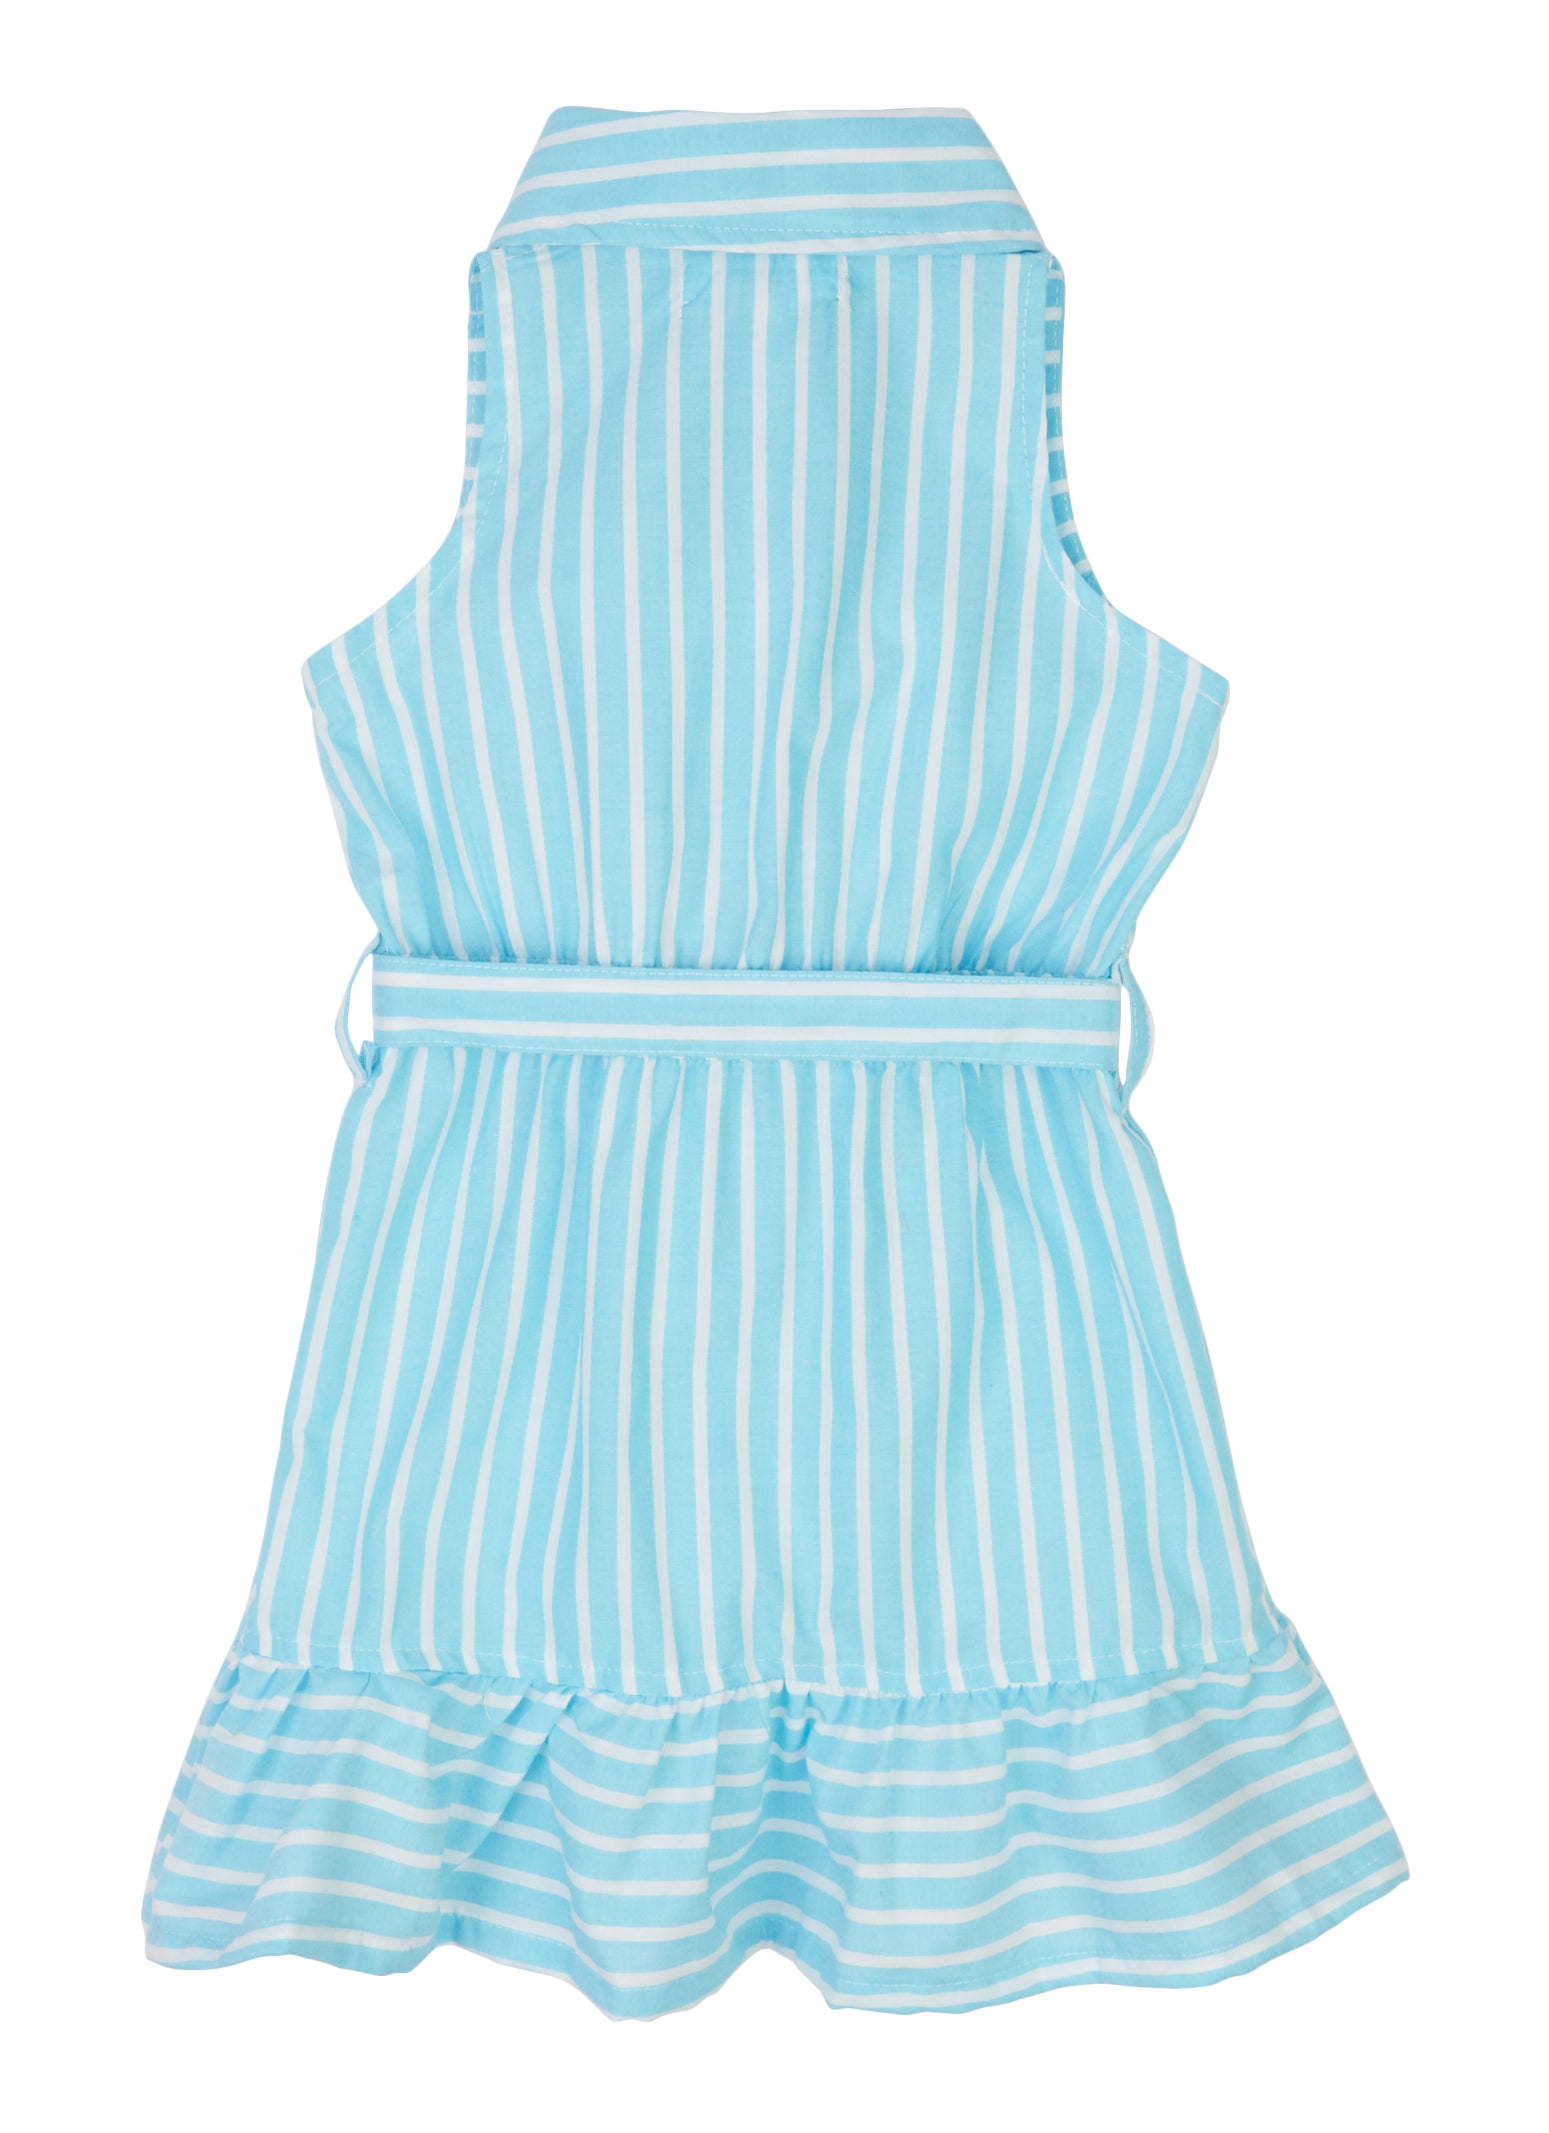 Toddler Girls Striped Sleeveless Button Front Shirt Dress